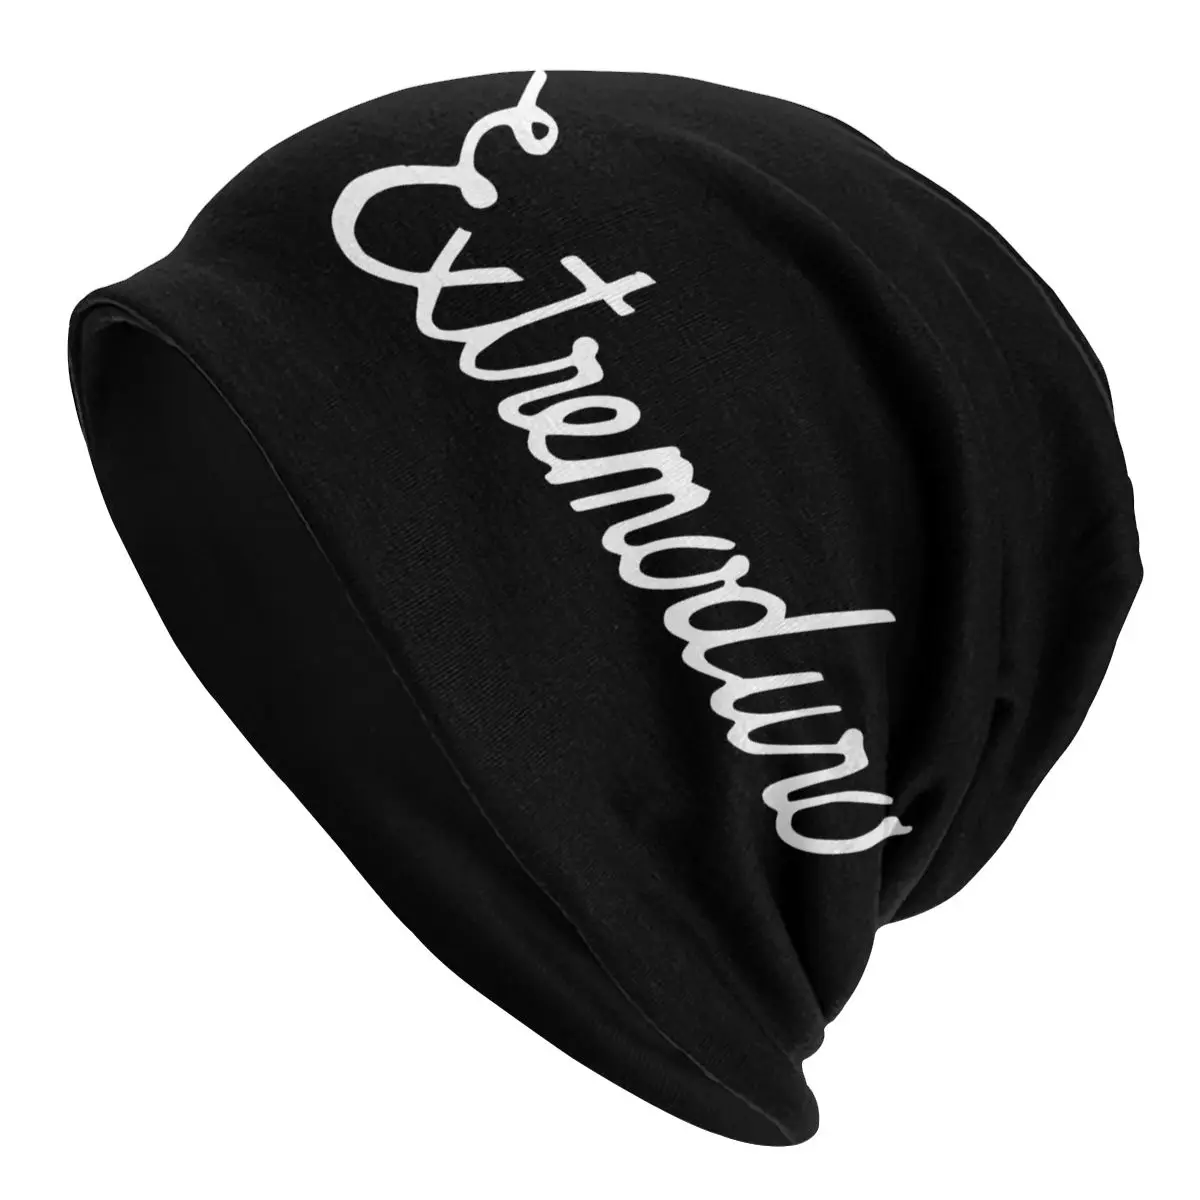 

Adult Men's Knit Hat EXTREMODURO (2) Bonnet Hats hip hop cap R214 Casual Unisex Skullies Beanies Caps